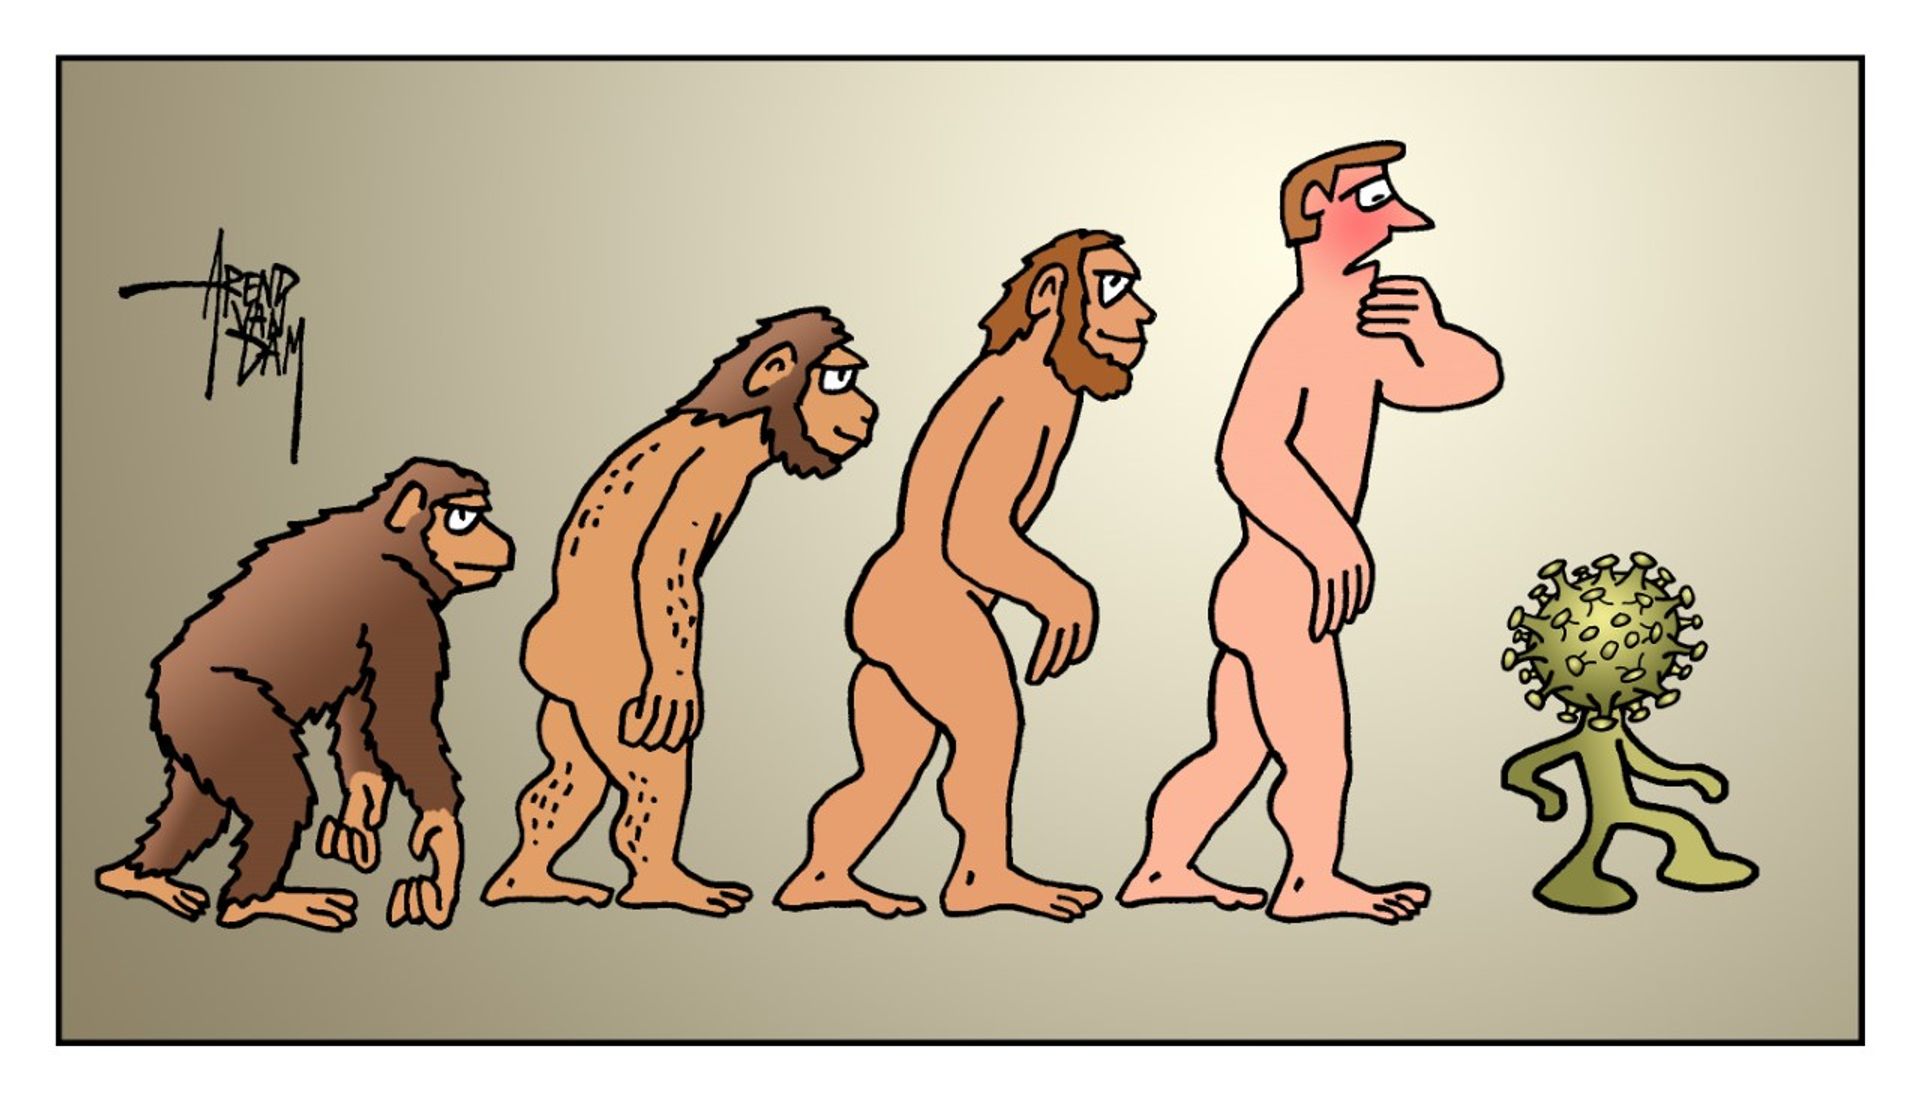 evolutie